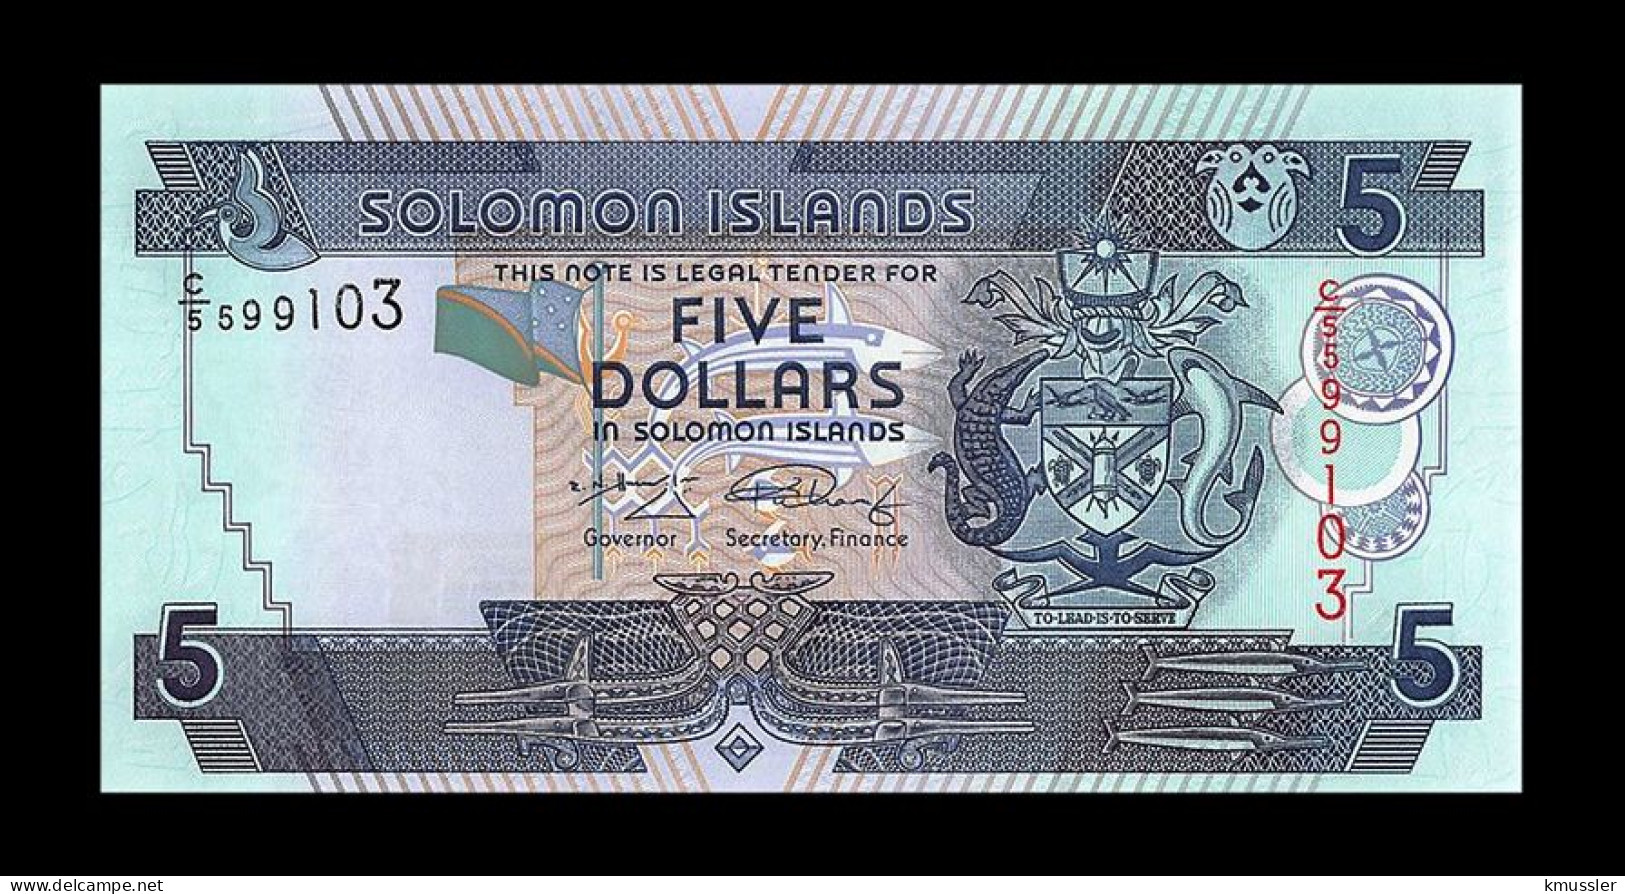 # # # Banknote Von Den Solomon-Inseln 5 Dollars UNC # # # - Solomon Islands